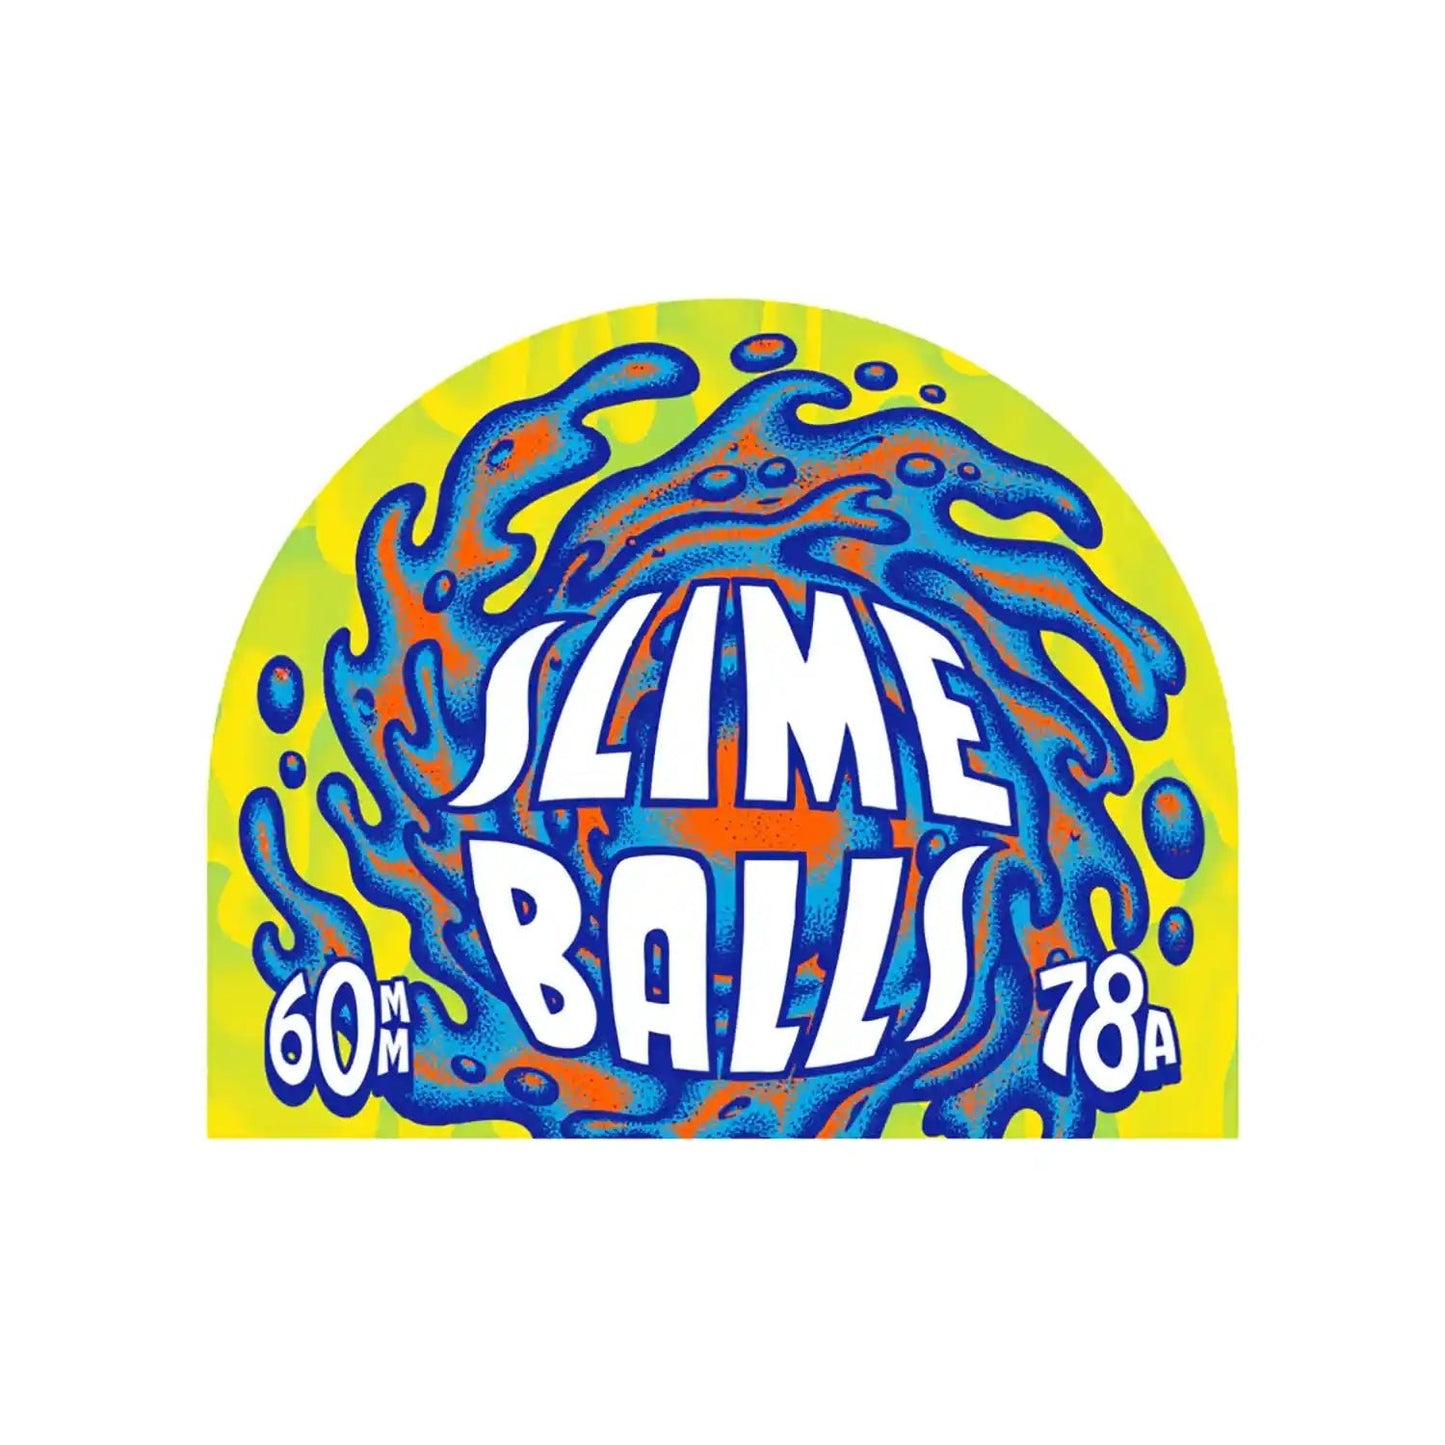 Slime Balls OG Slime Wheels Green 78A (60mm) - Tiki Room Skateboards - 4